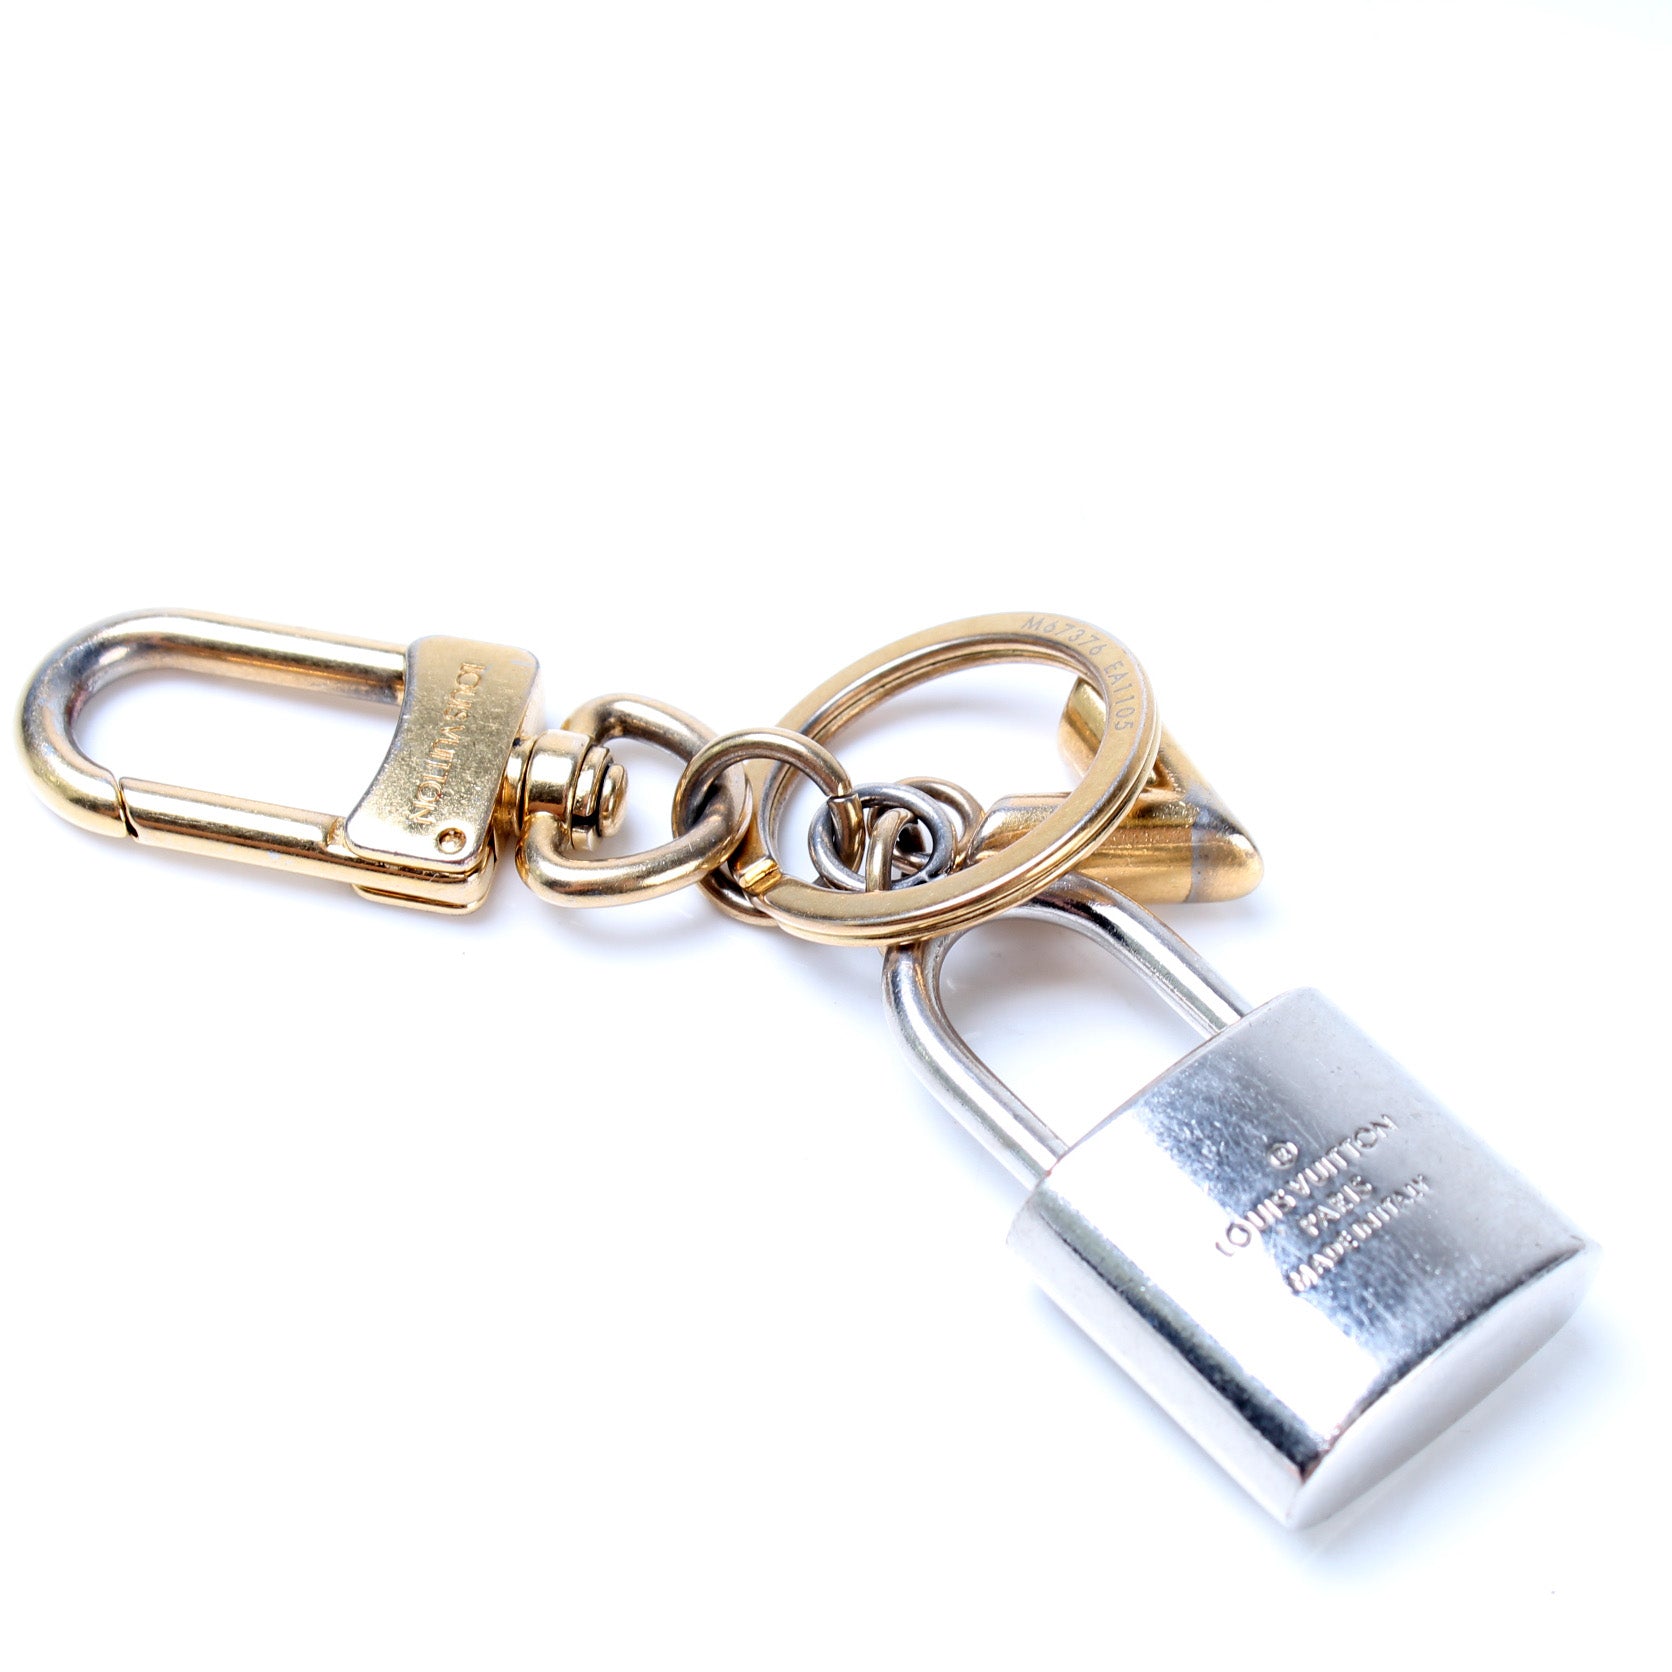 Louis Vuitton Bag Charm Kaleido V Padlock Gold Silver Key Ring